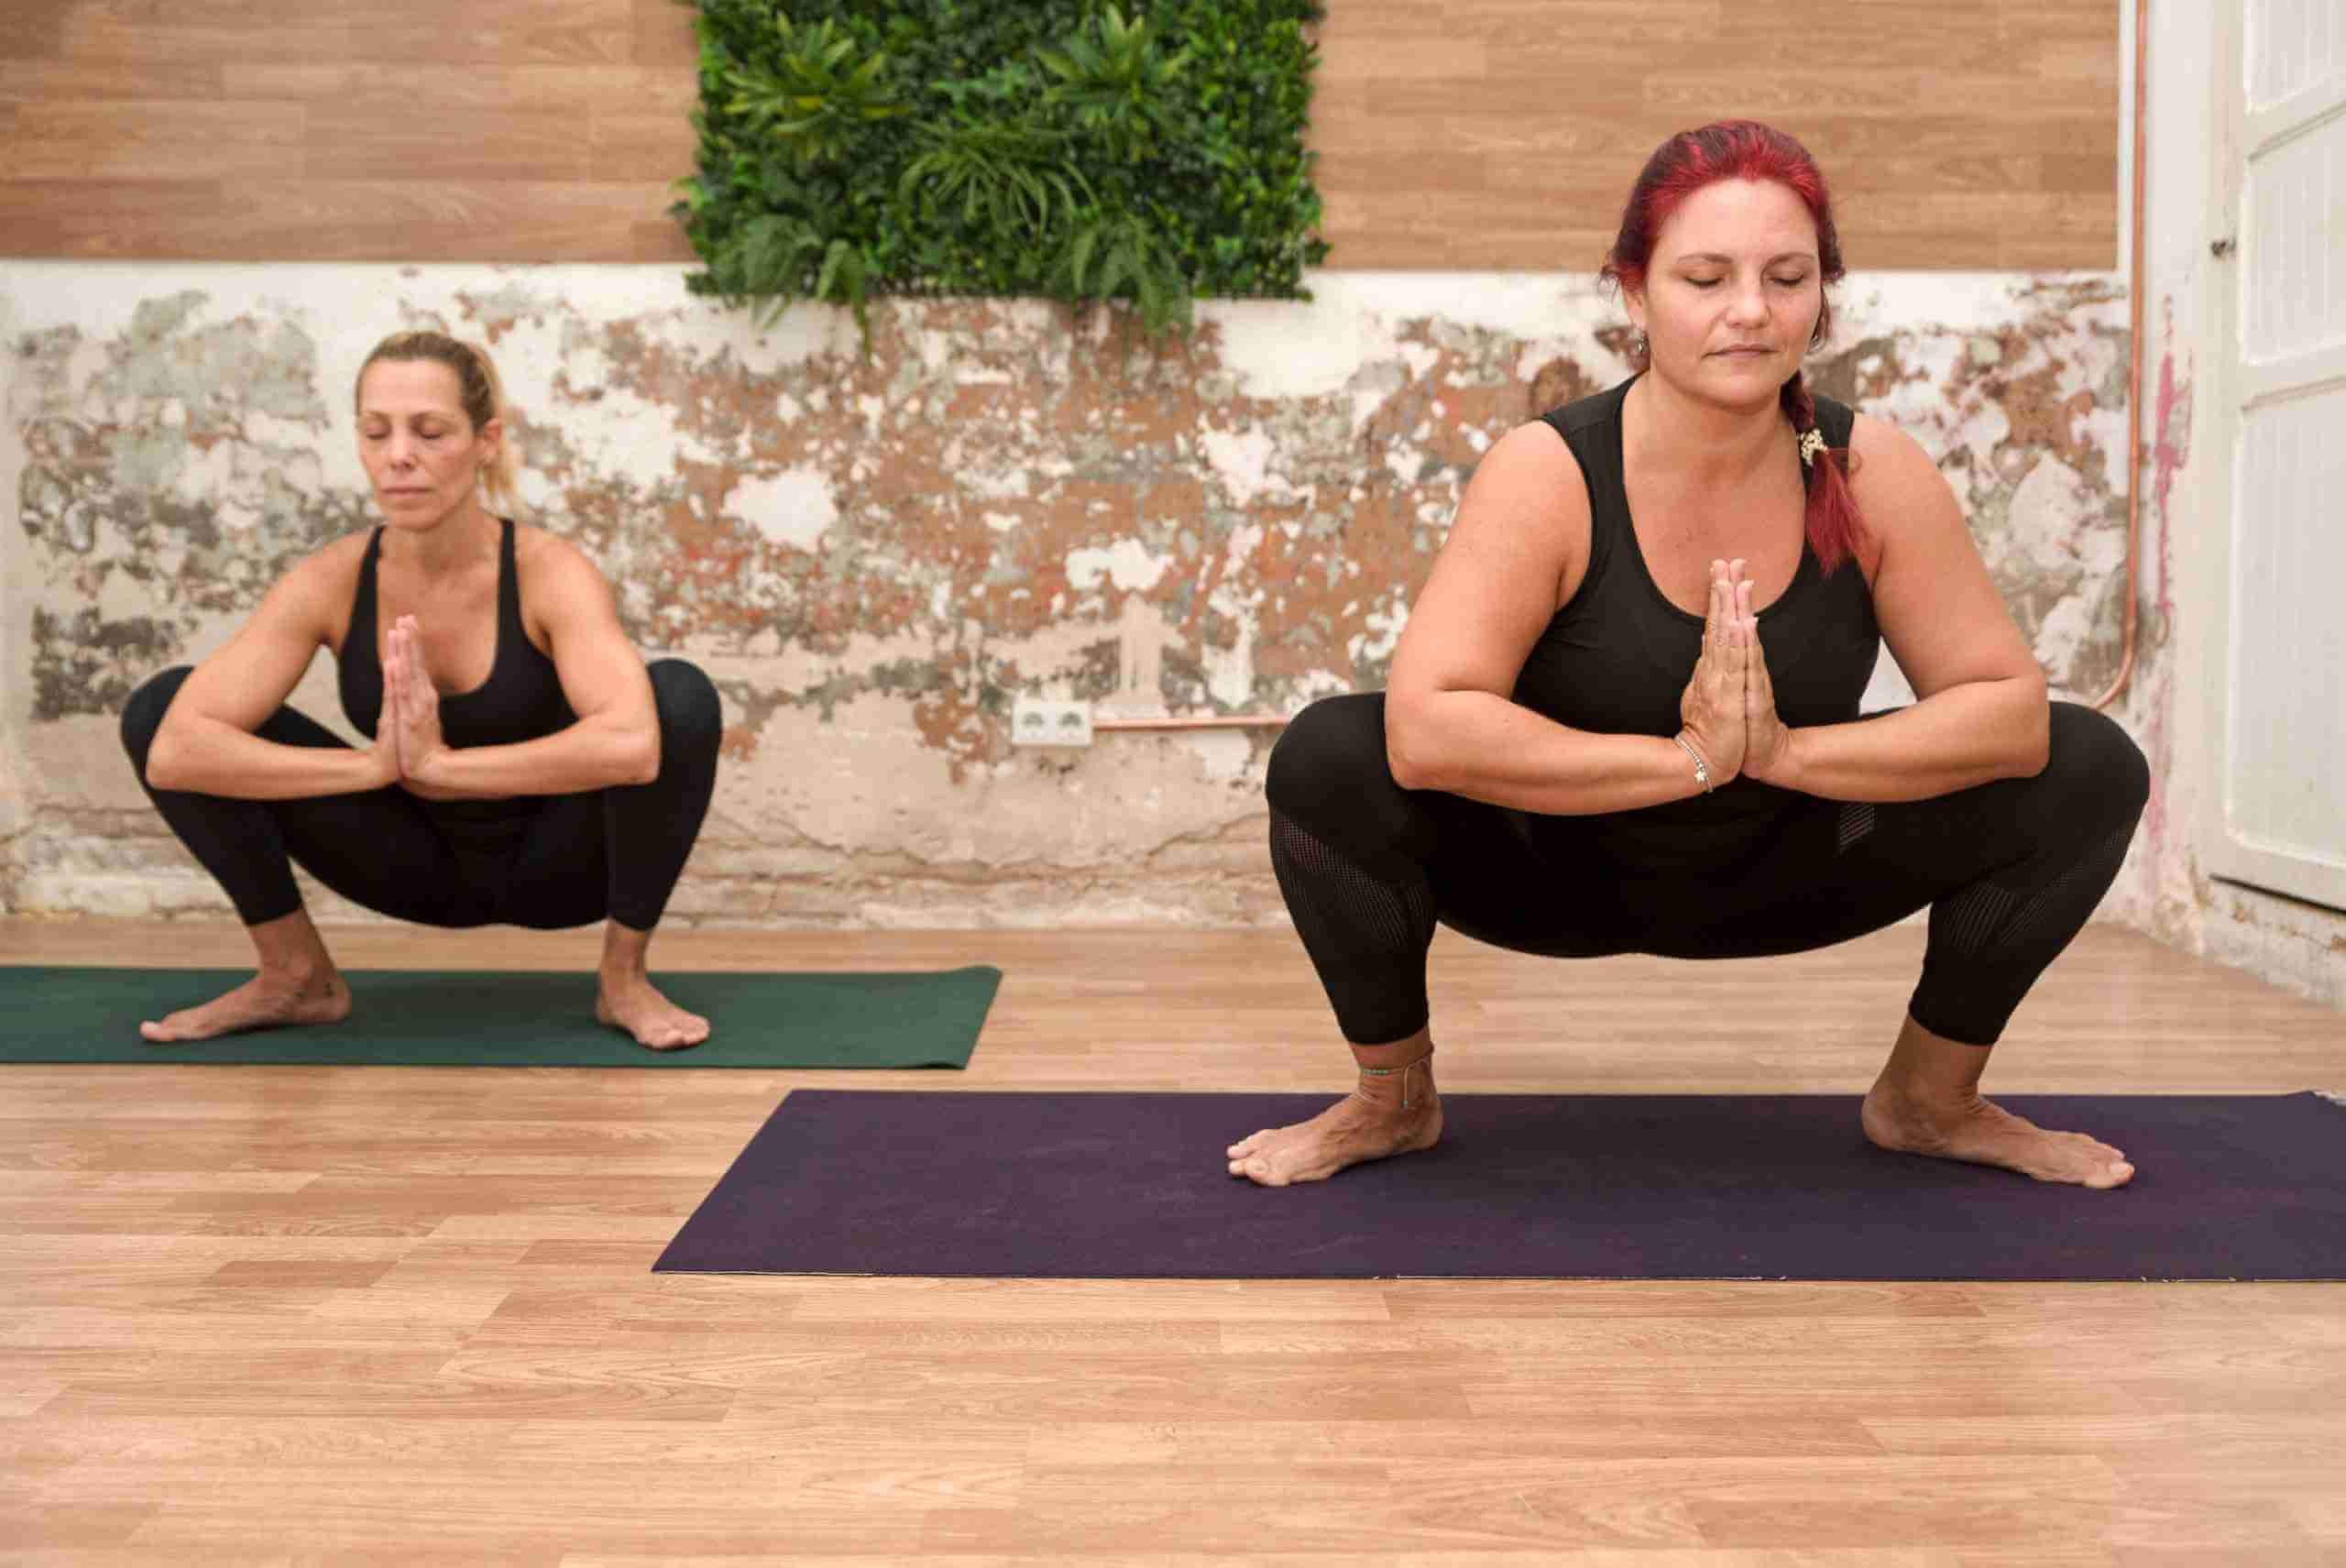 A Better Way to Sit | Malasana | Garland Pose | Yoga Pose